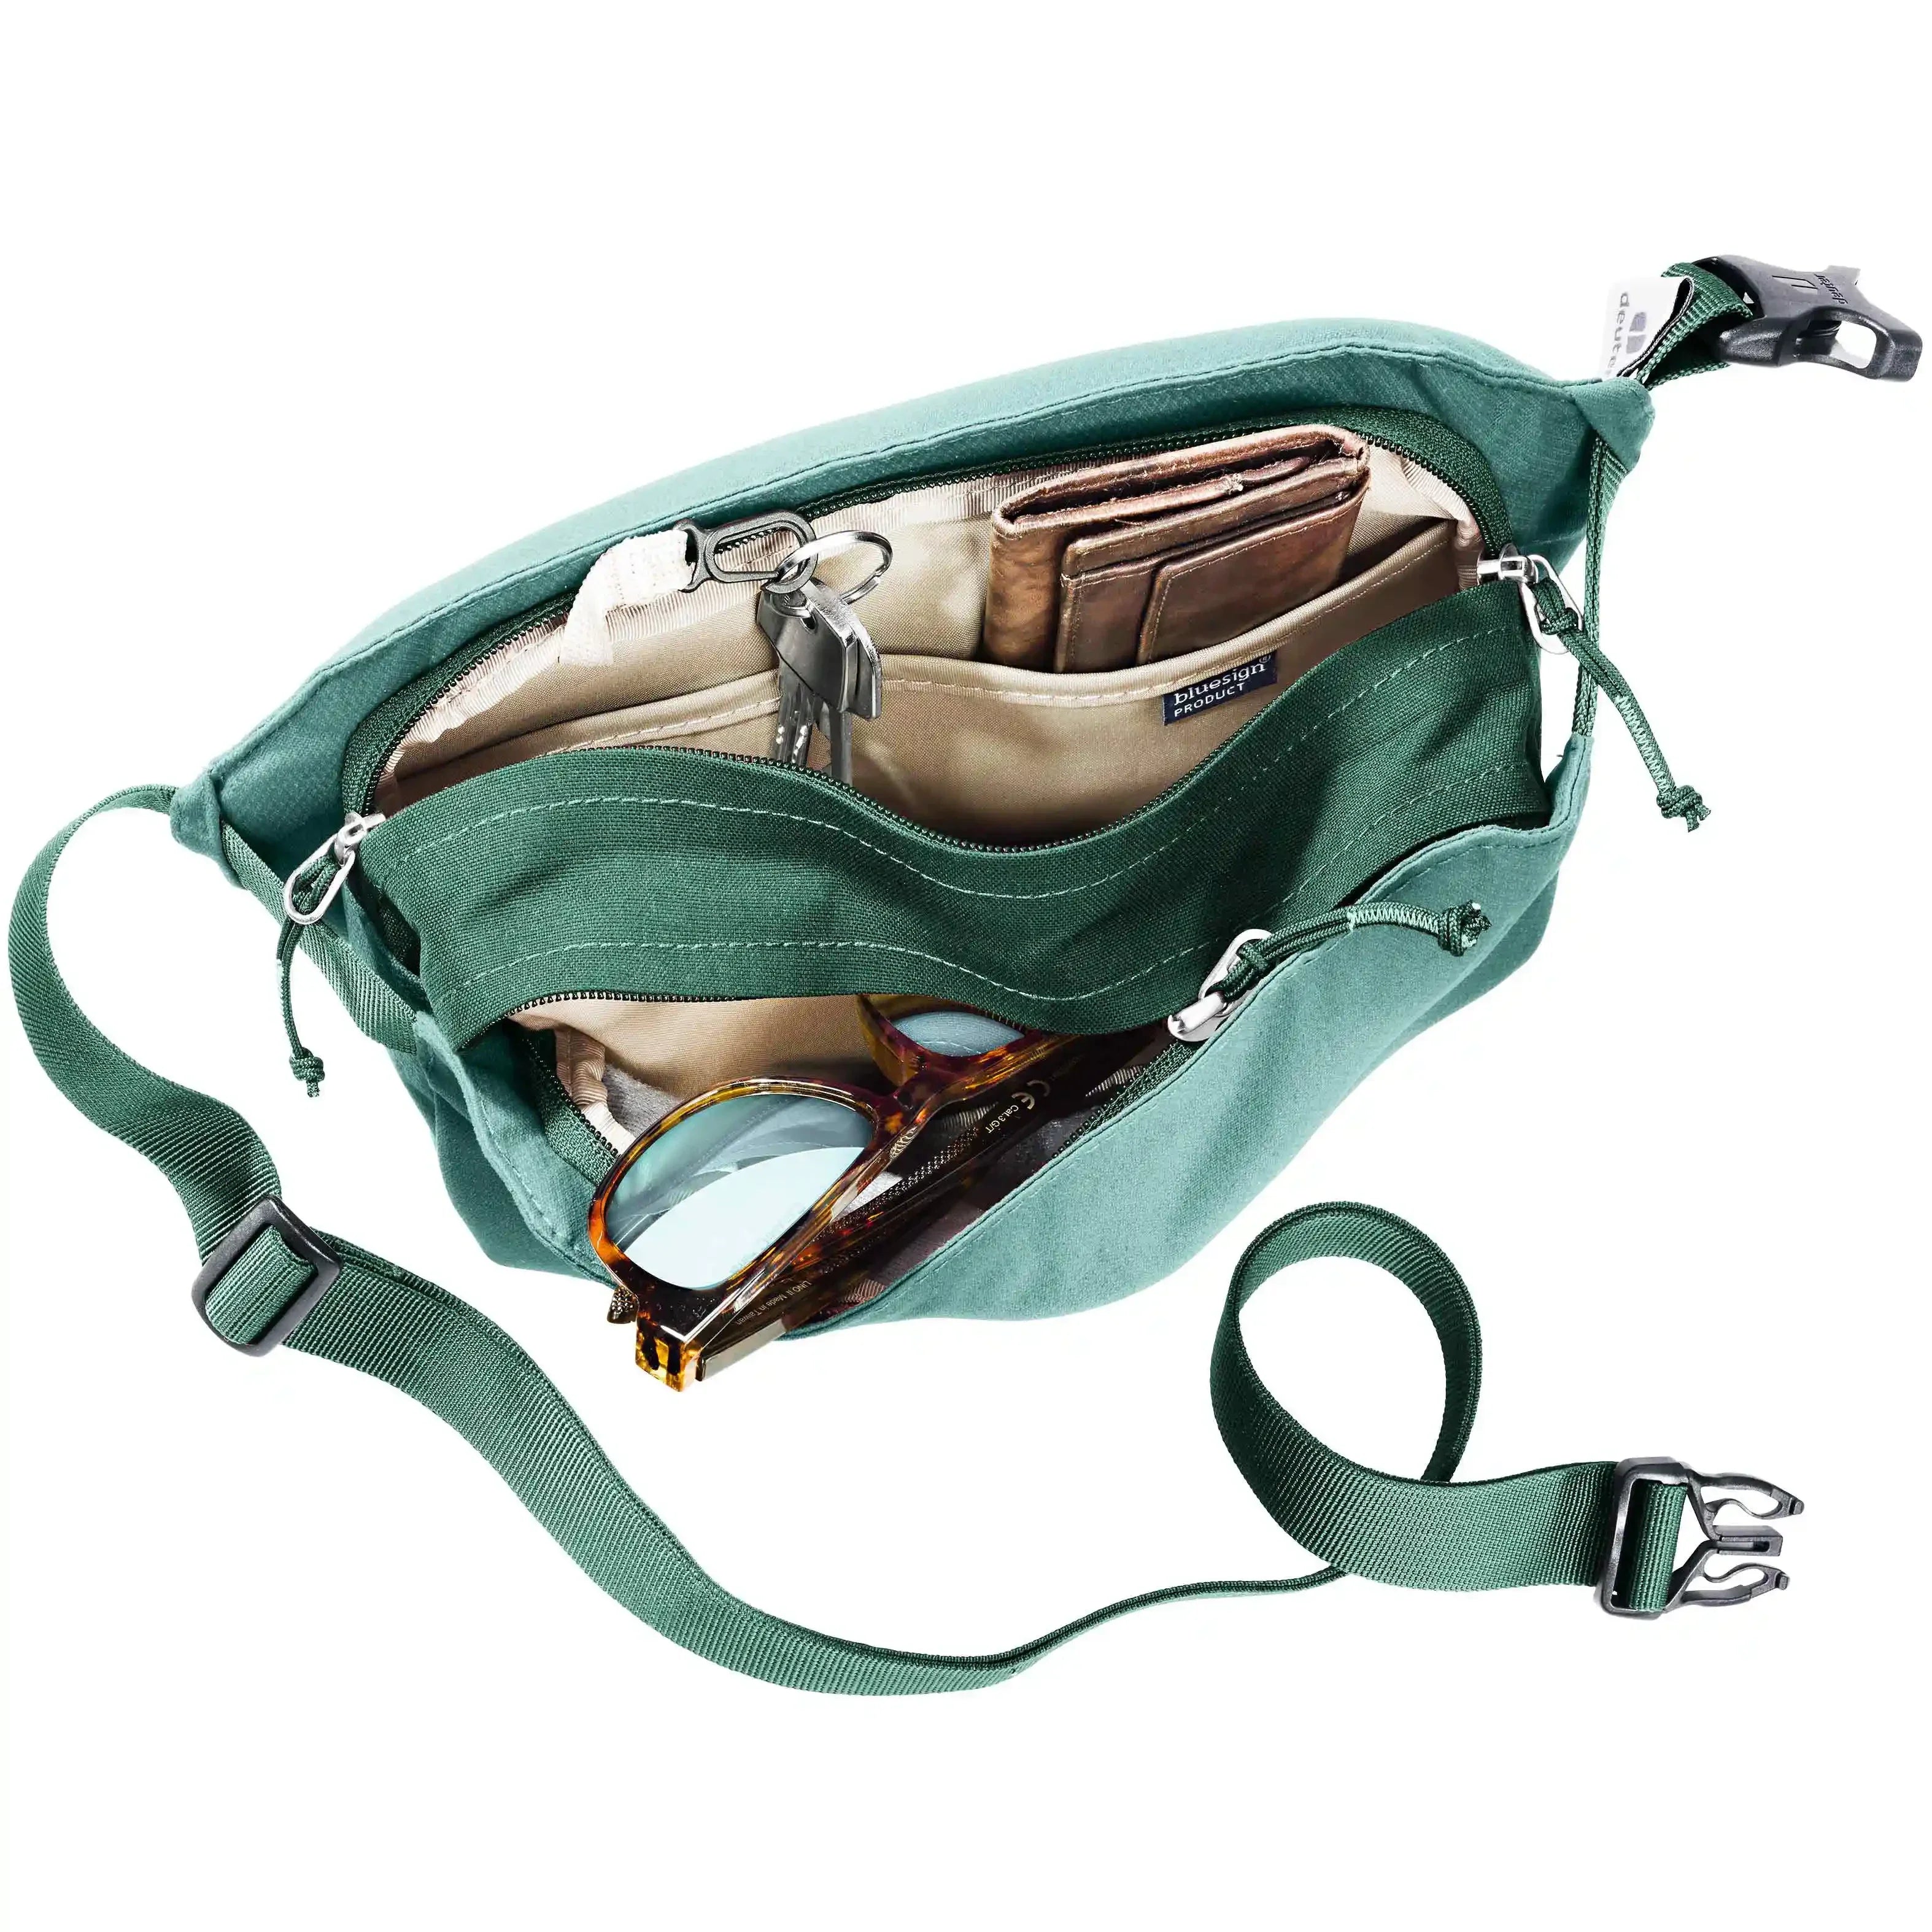 Deuter Accessories Passway 2 Crossbody Bag 28 cm - jade-seagreen